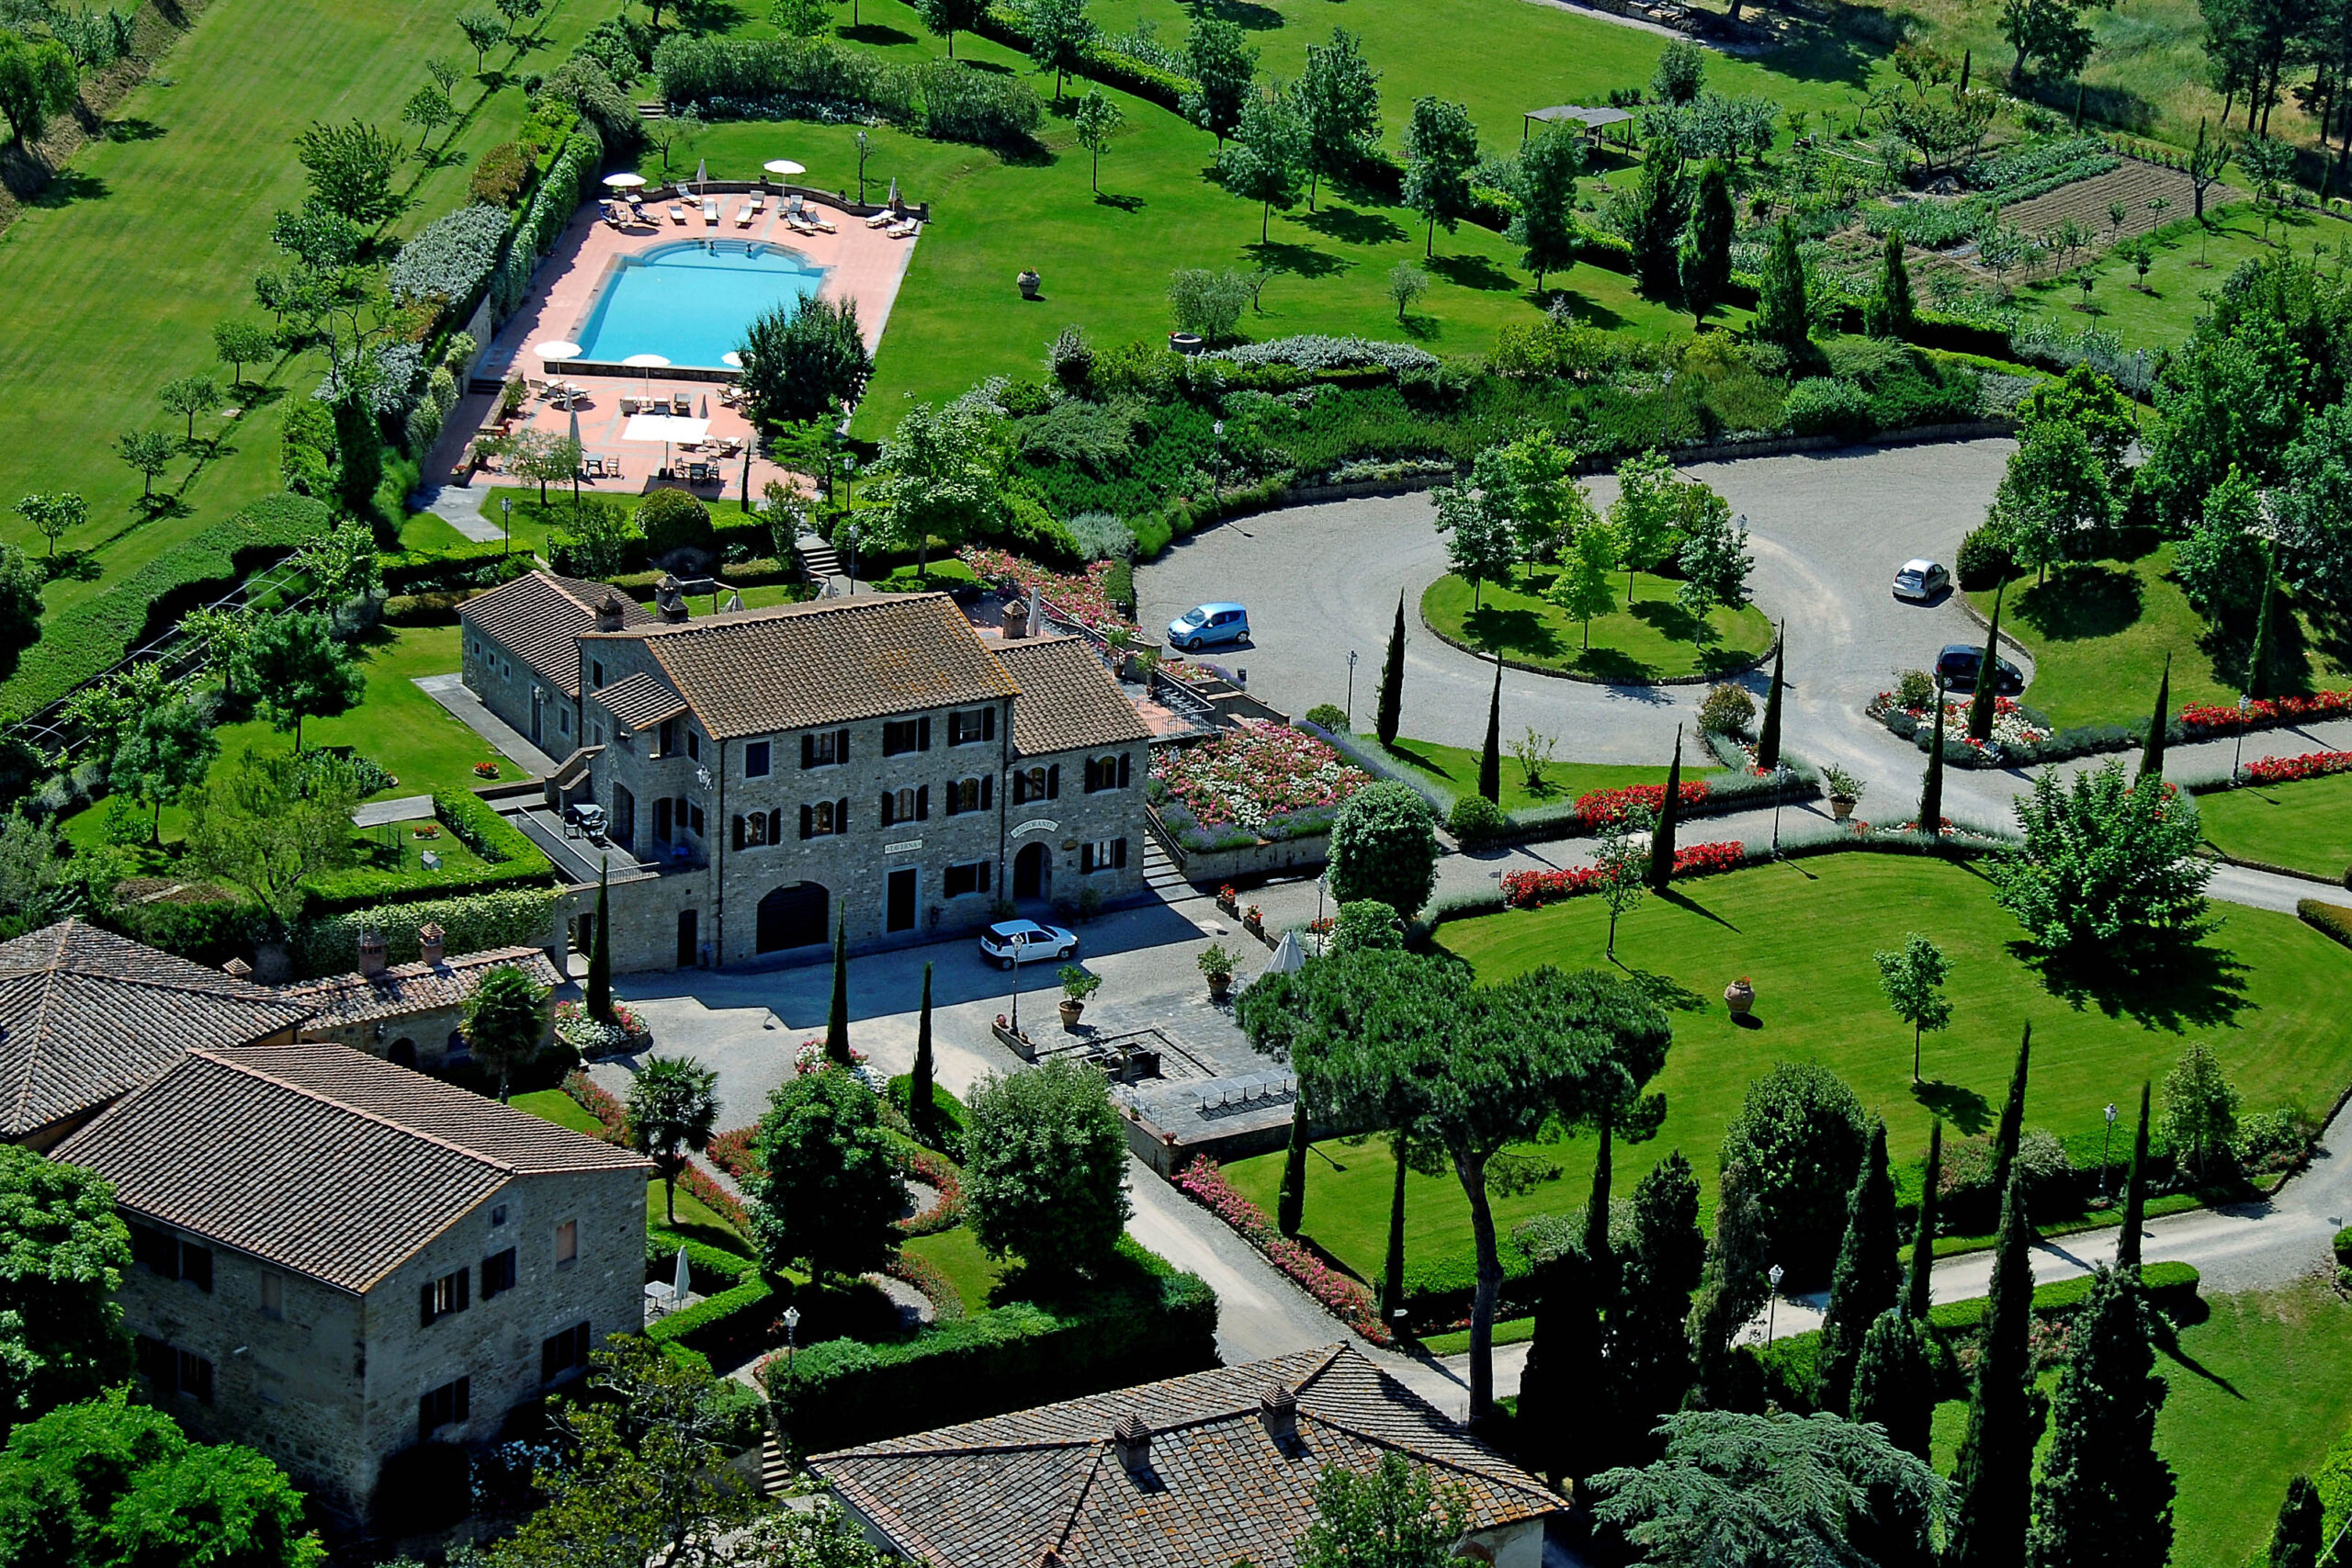 Toscana, Cortona – Castelli e proprietà di campagna: in Italia l’offerta immobiliare attira gli investitori esteri sempre più interessati all’hotellerie